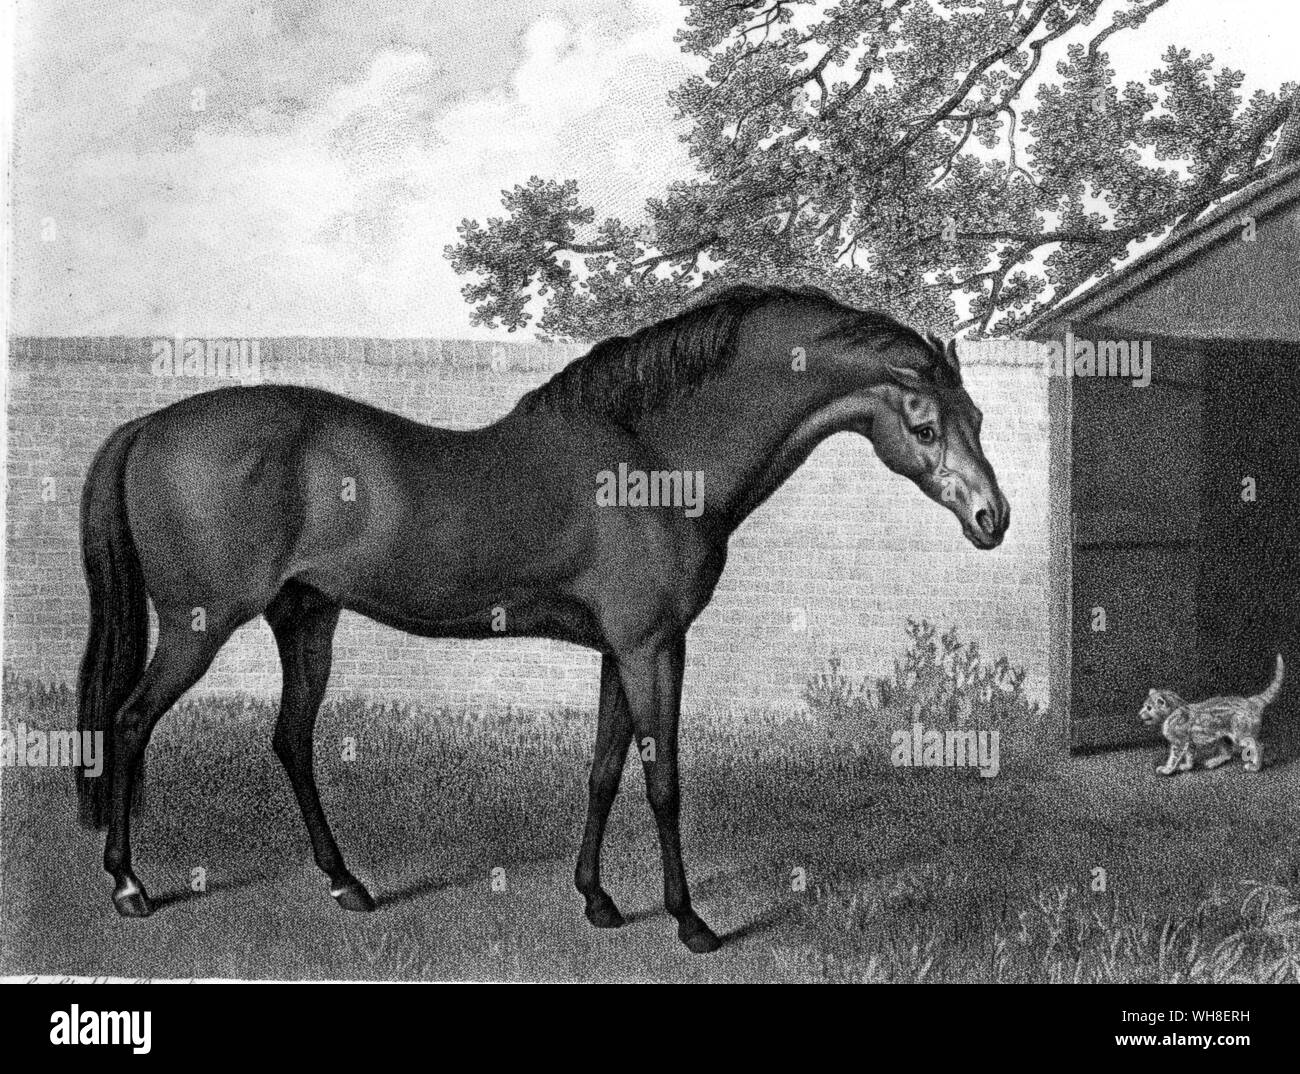 Il Godolphin Arabian 1704. Il Godolphin Arabian (1724-1754 ca), noto anche come il Godolphin Barb, è stato uno dei tre cavalli che furono i fondatori della moderna corse di cavalli purosangue riproduttori. Tutti i moderni purosangue discendono da tre stalloni importati in Inghilterra dal Medio Oriente verso la fine del XVII e l'inizio del XVIII secolo: il Darley Arabian, Godolphin Arabian e il Byerly Turk, insieme con circa 35 mares. La storia delle corse di cavalli da Roger Longrigg, pagina 61. Foto Stock